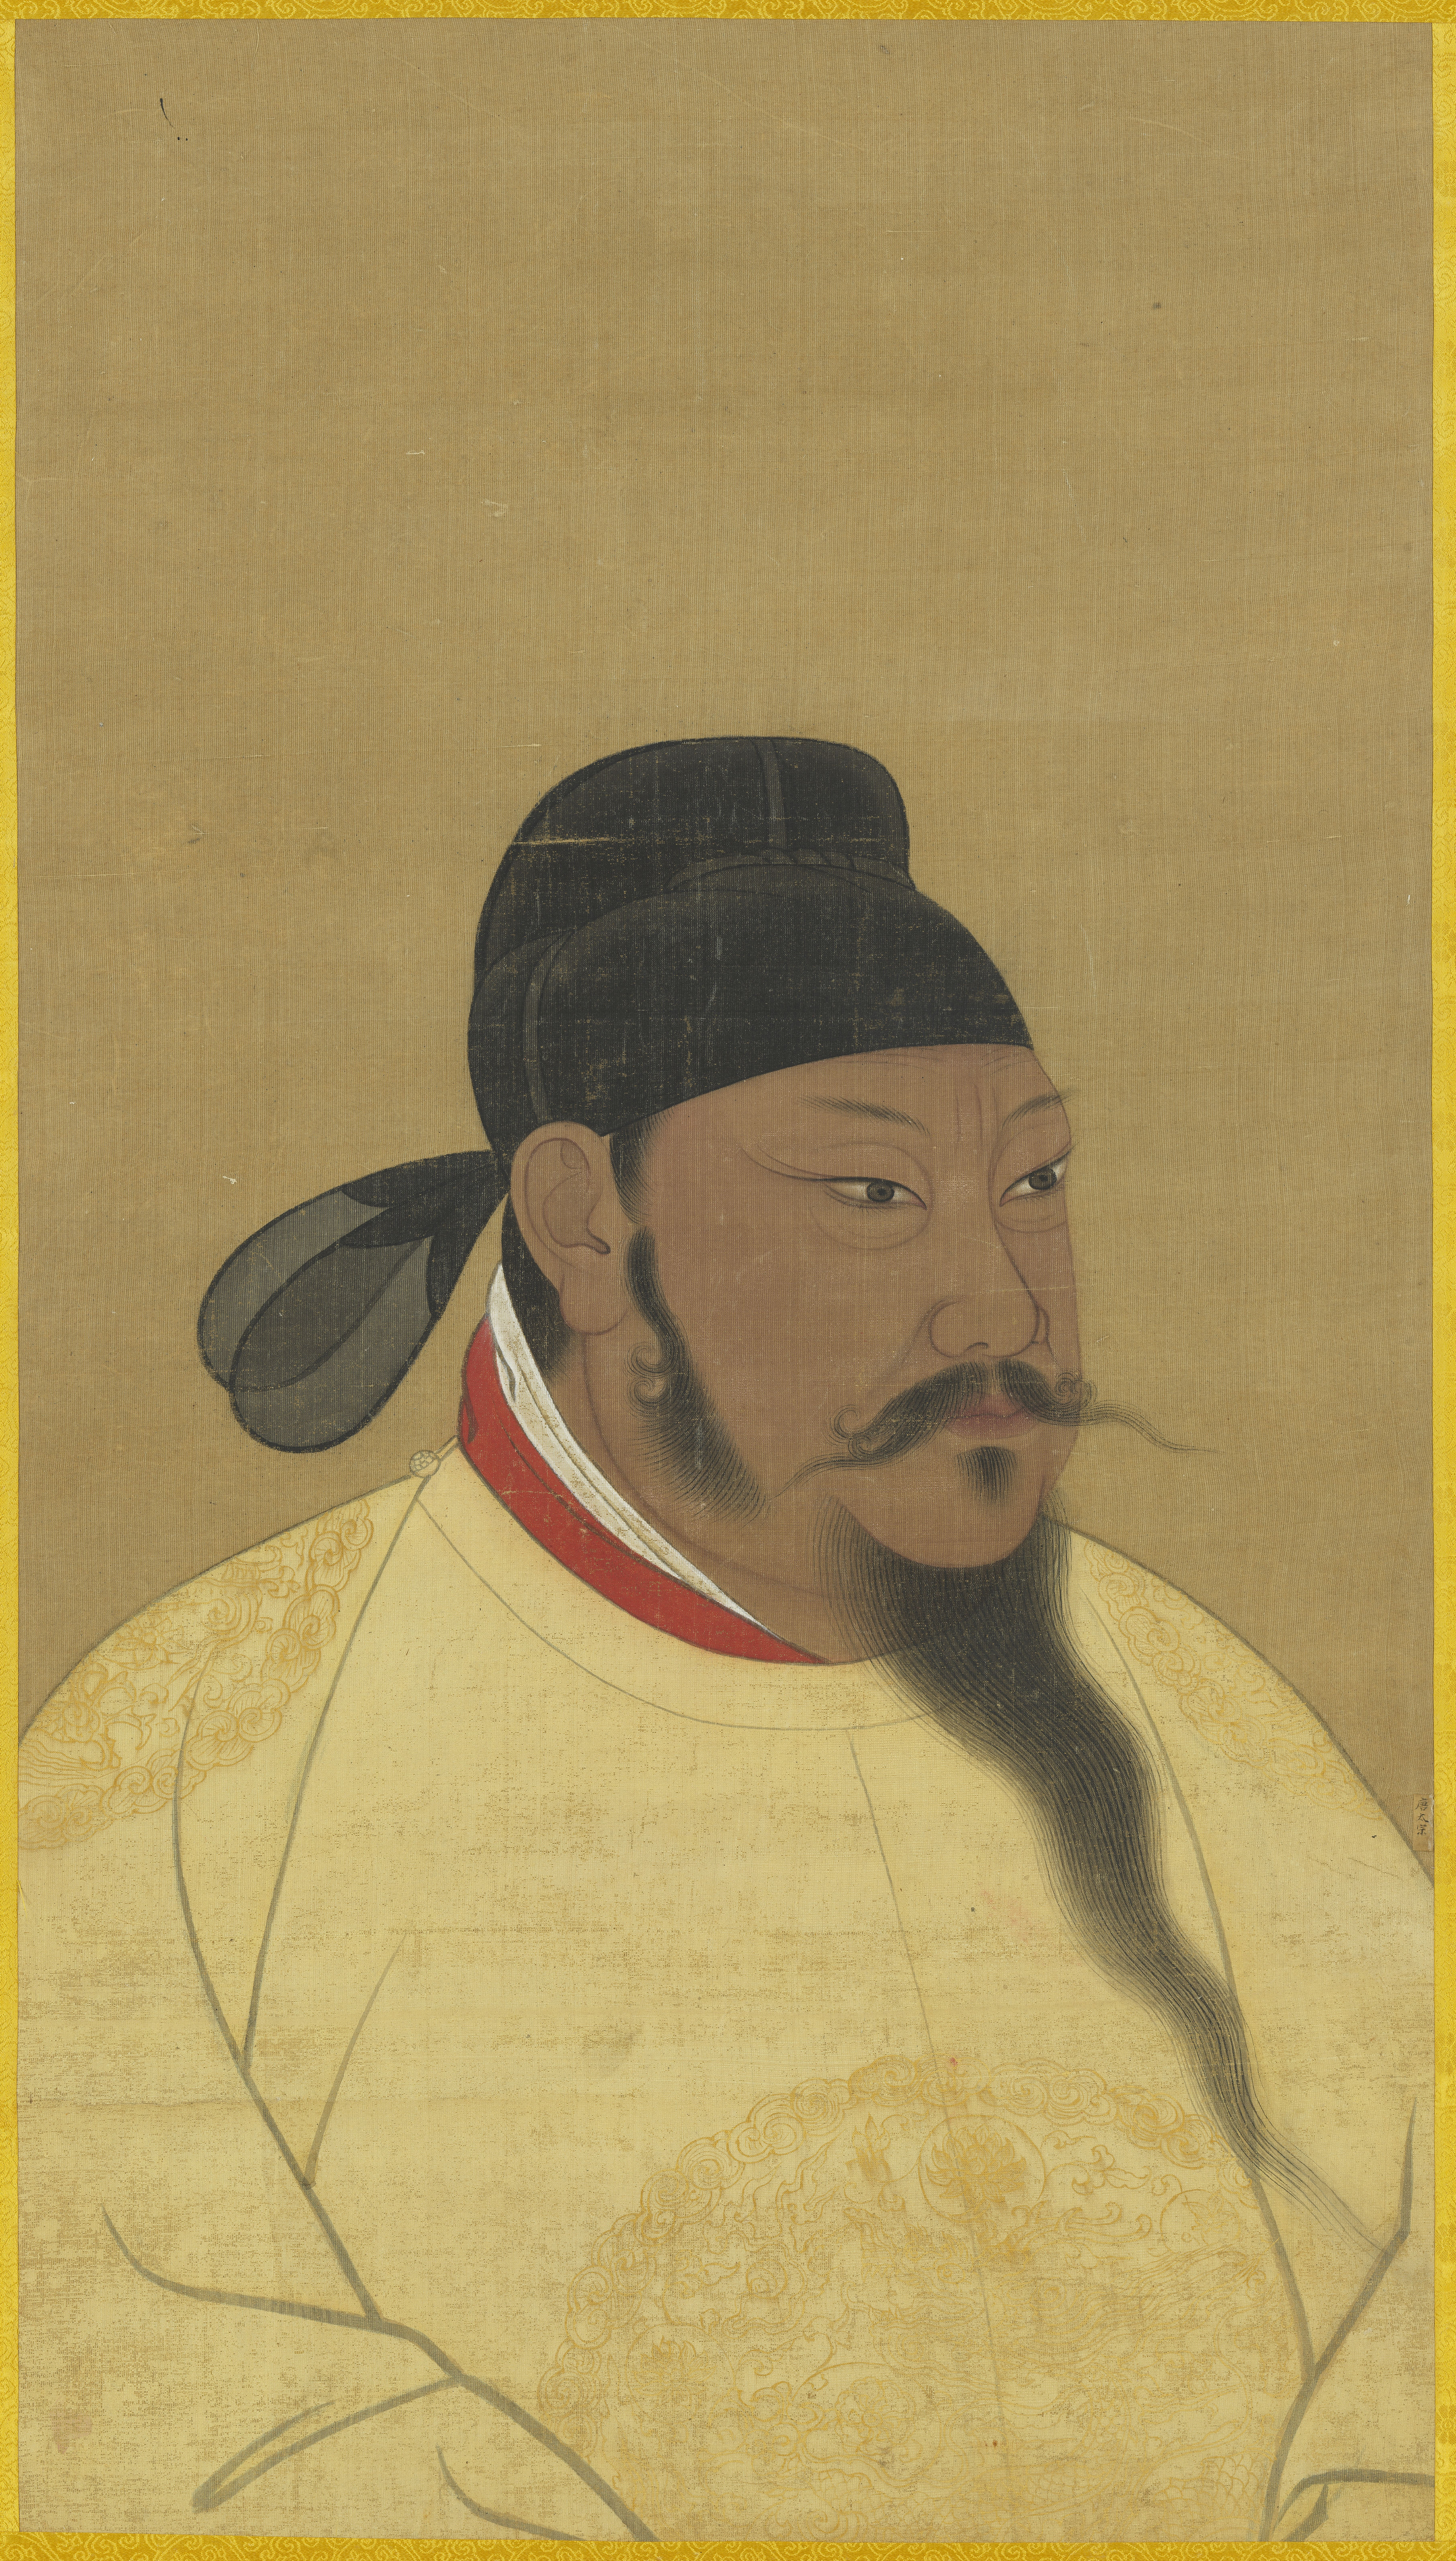 Emperor Taizong of Tang